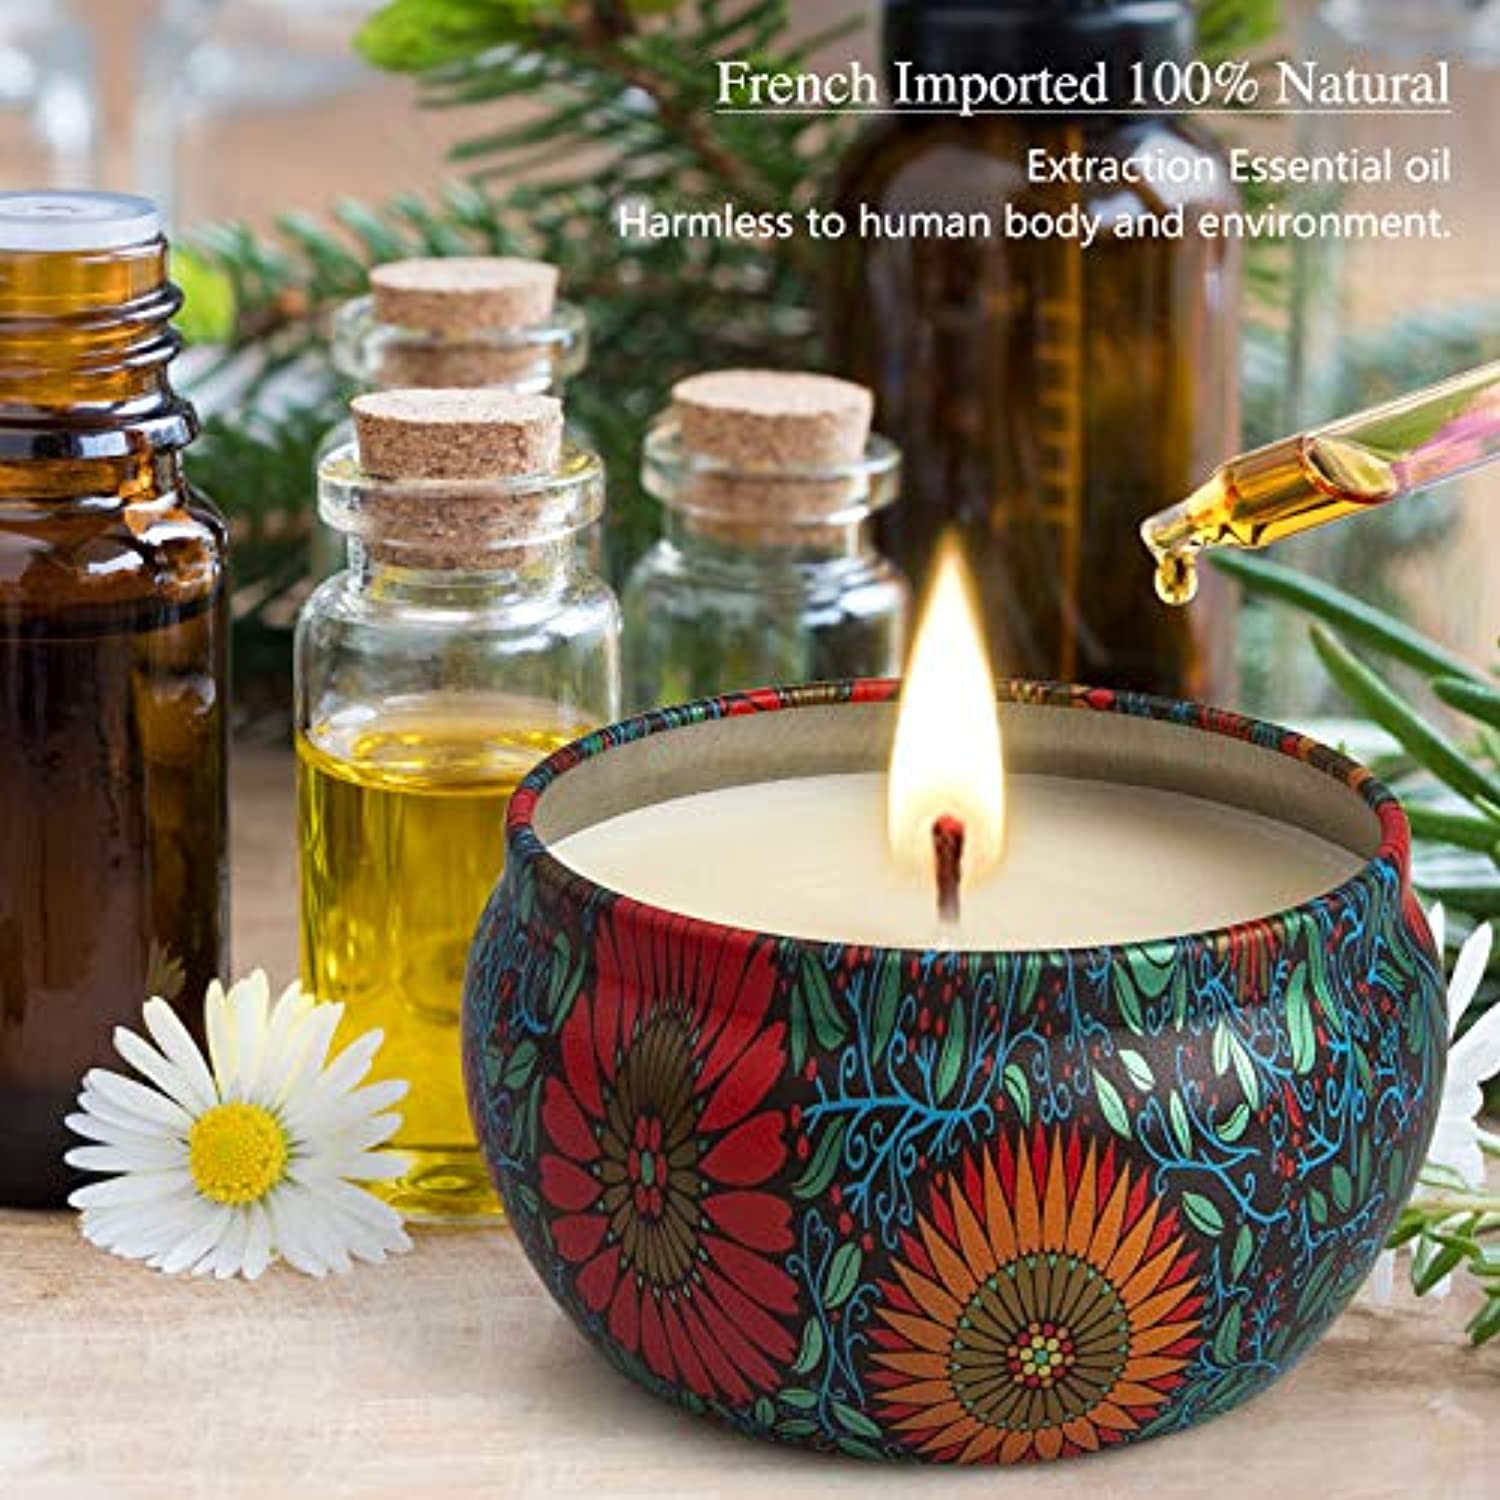 Juego de velas perfumadas de regalo para mamá, 4 velas de aromaterapia de  larga duración en una caja de regalo para el día de la madre o como regalo